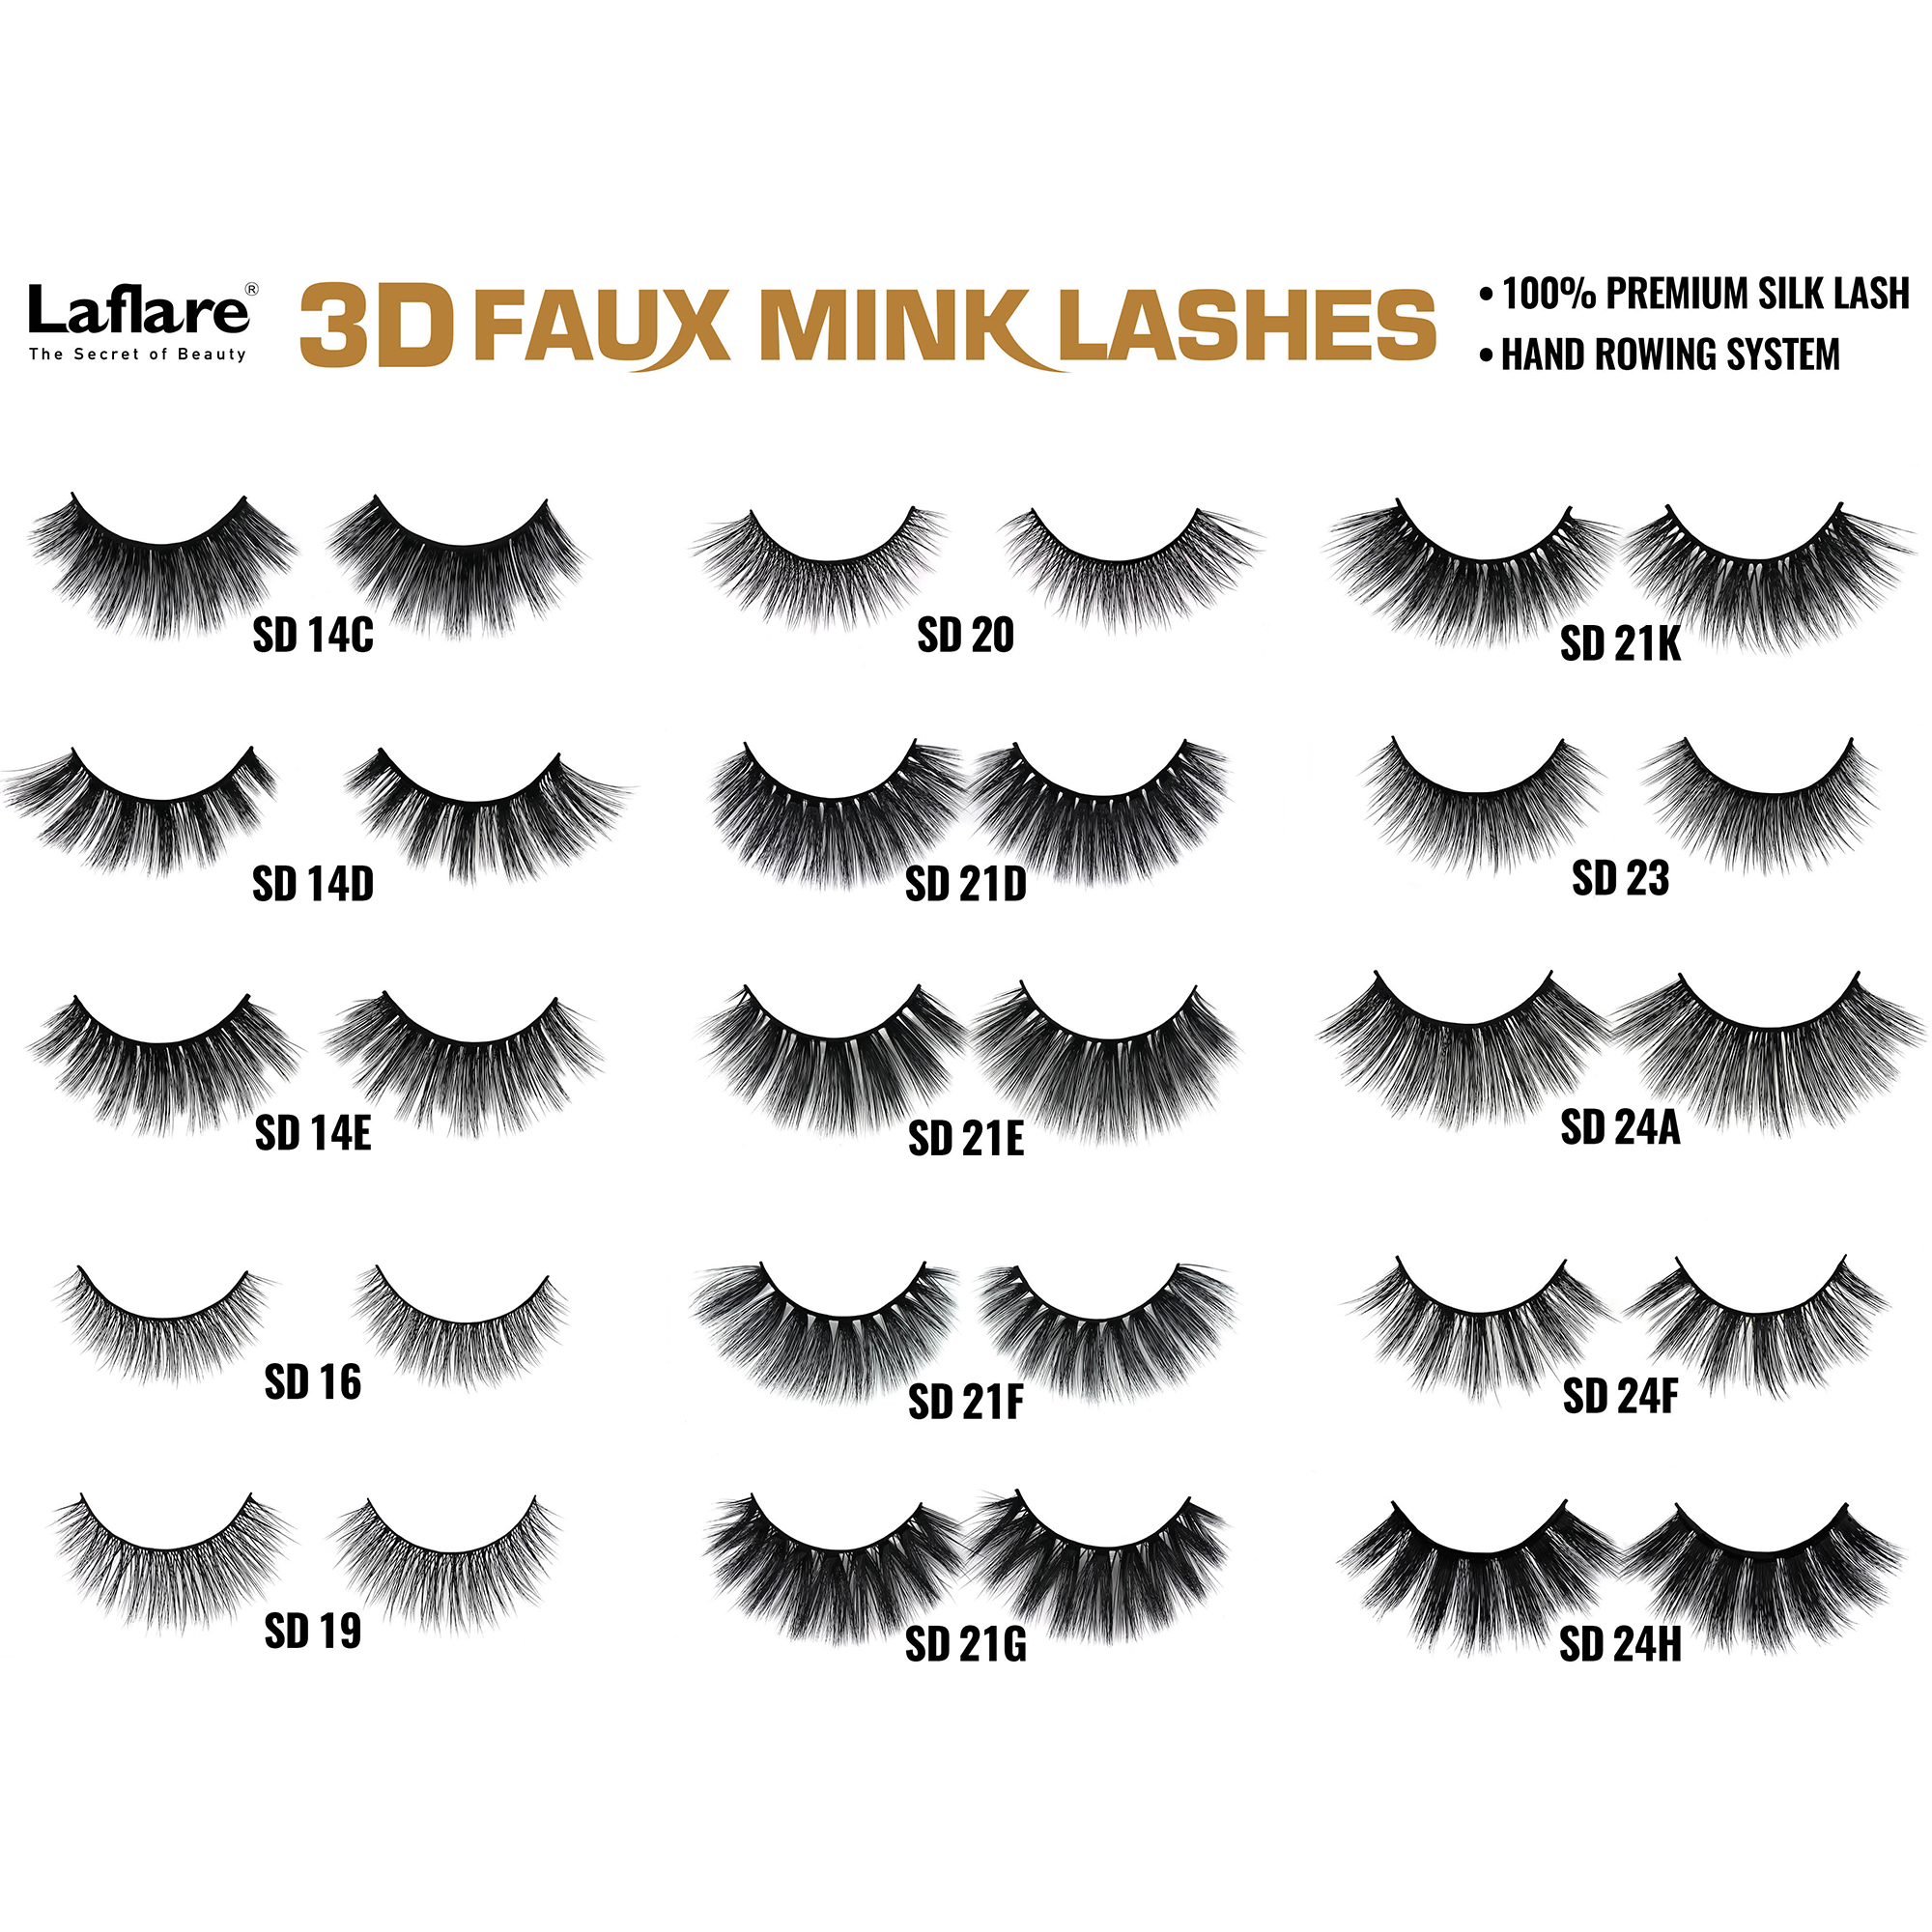 LAFLARE 3d Faux Mink Lashes - SD01A